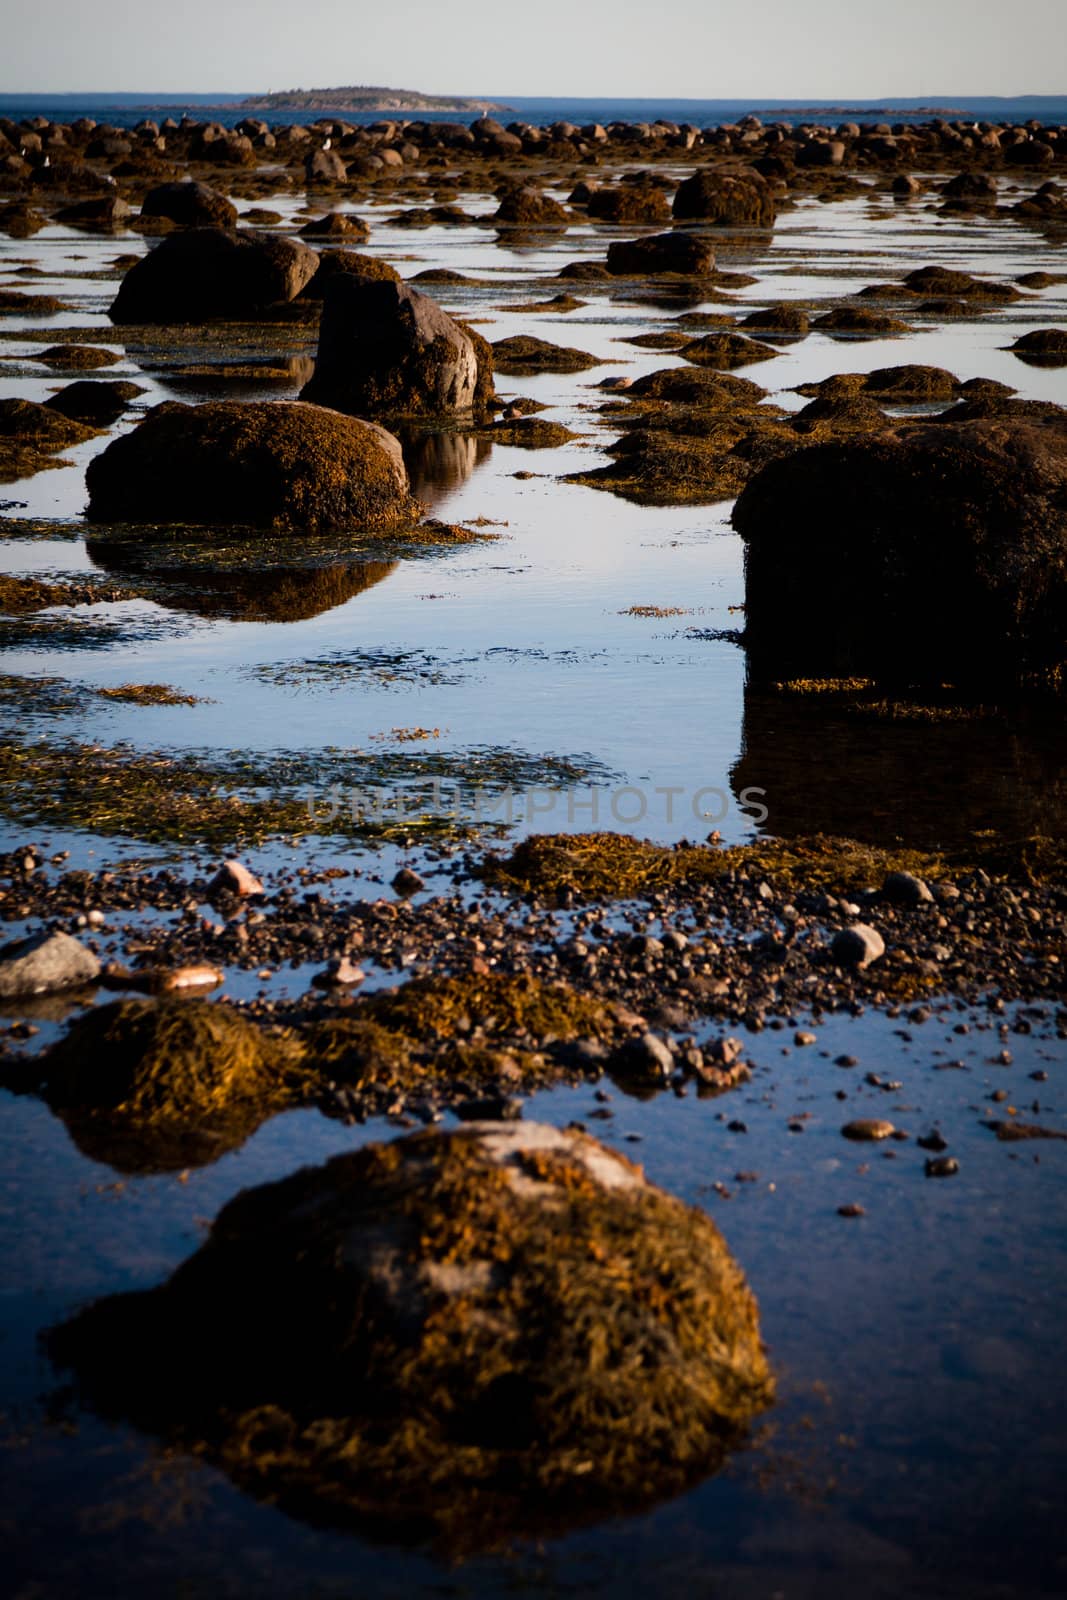 Stones in water - low tide